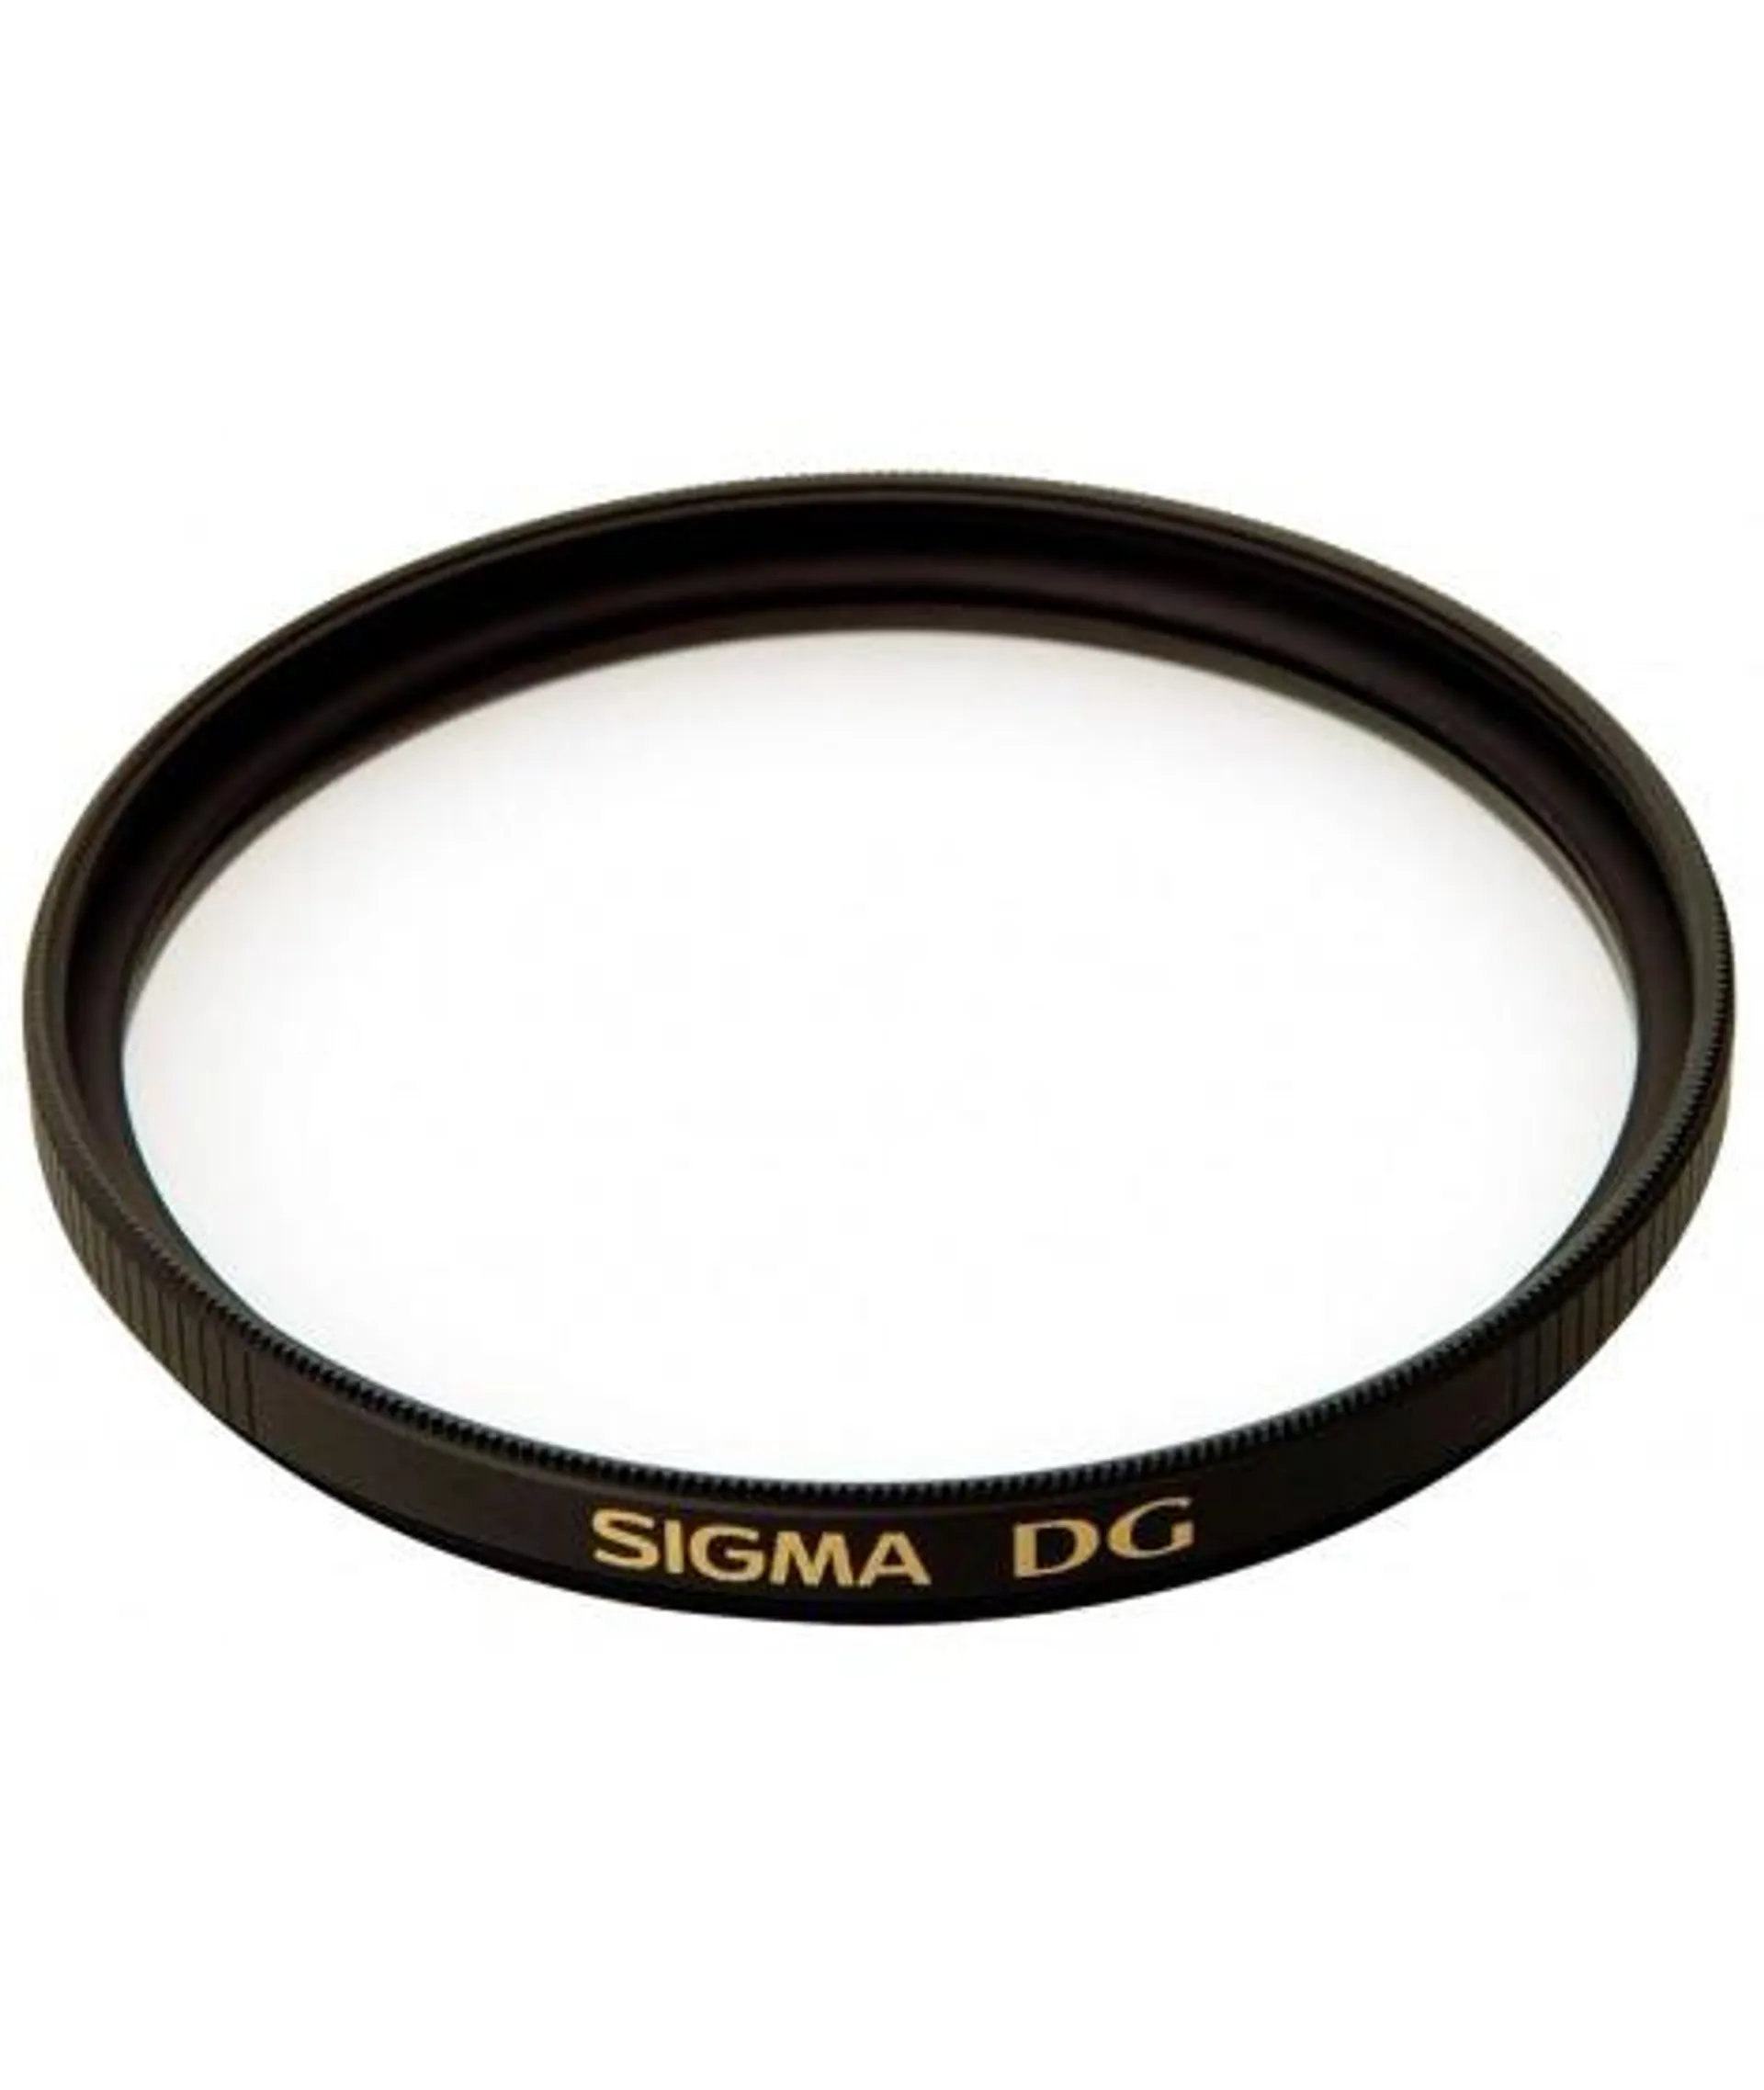 Filtro UV Sigma EX DG de 62mm